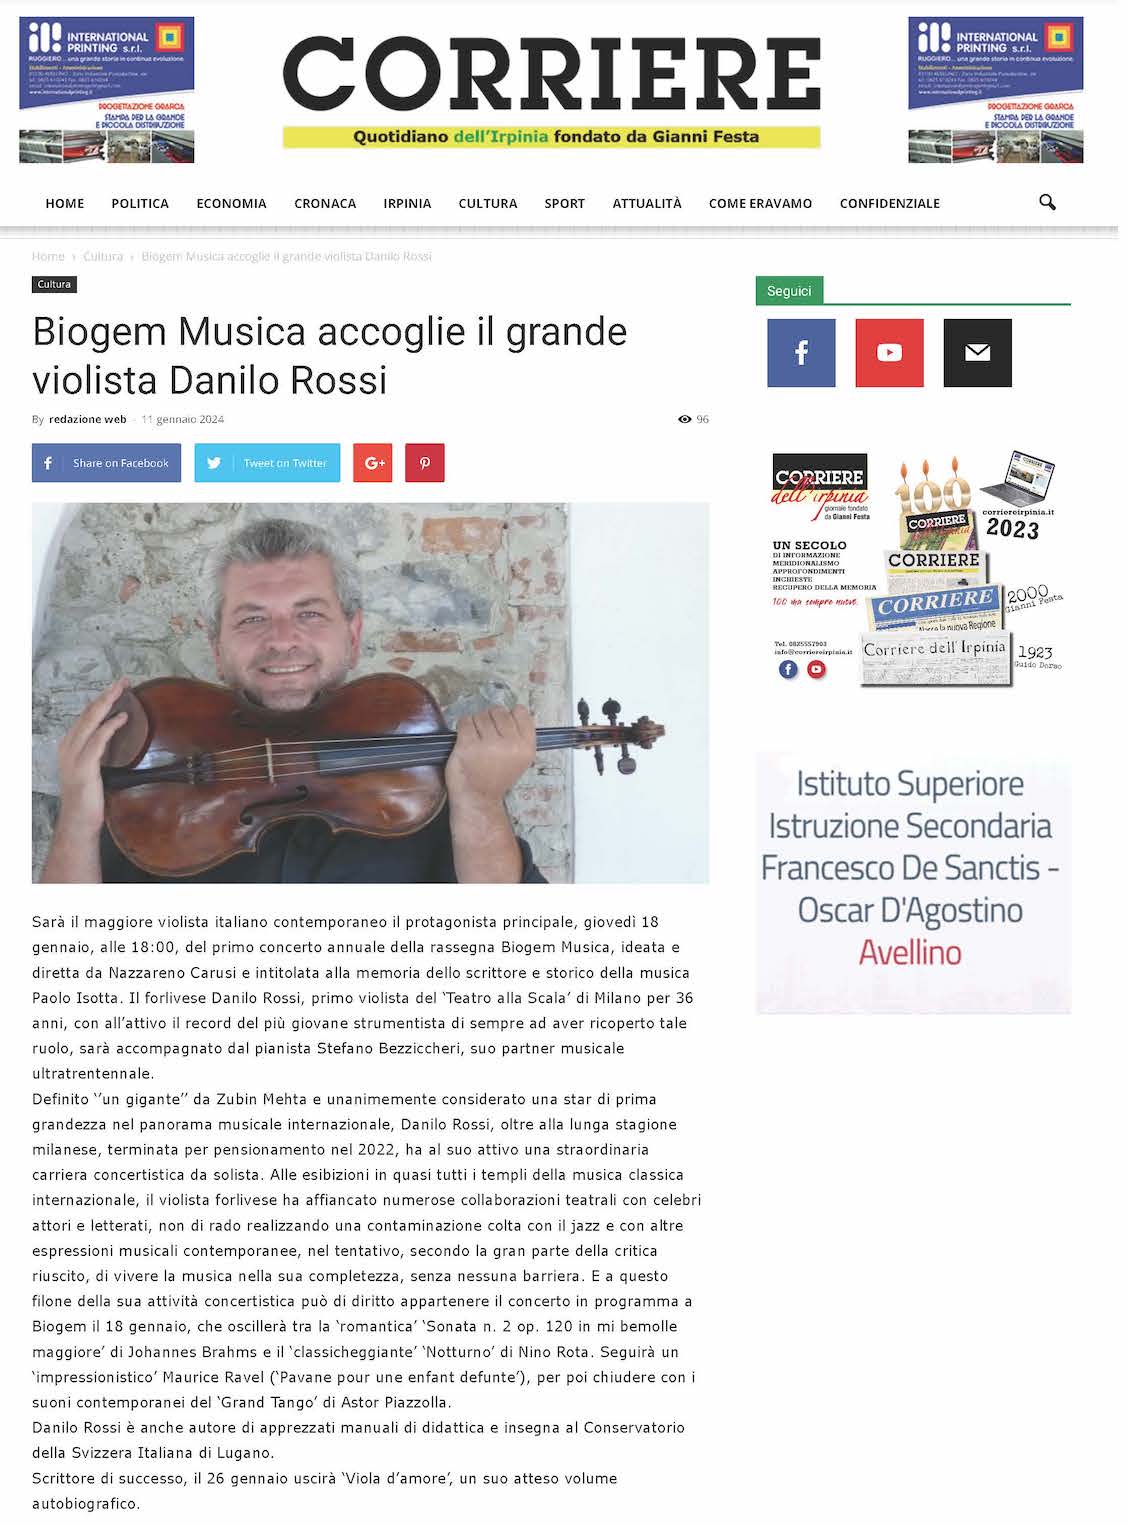 Biogem Musica accoglie il grande violista Danilo Rossi